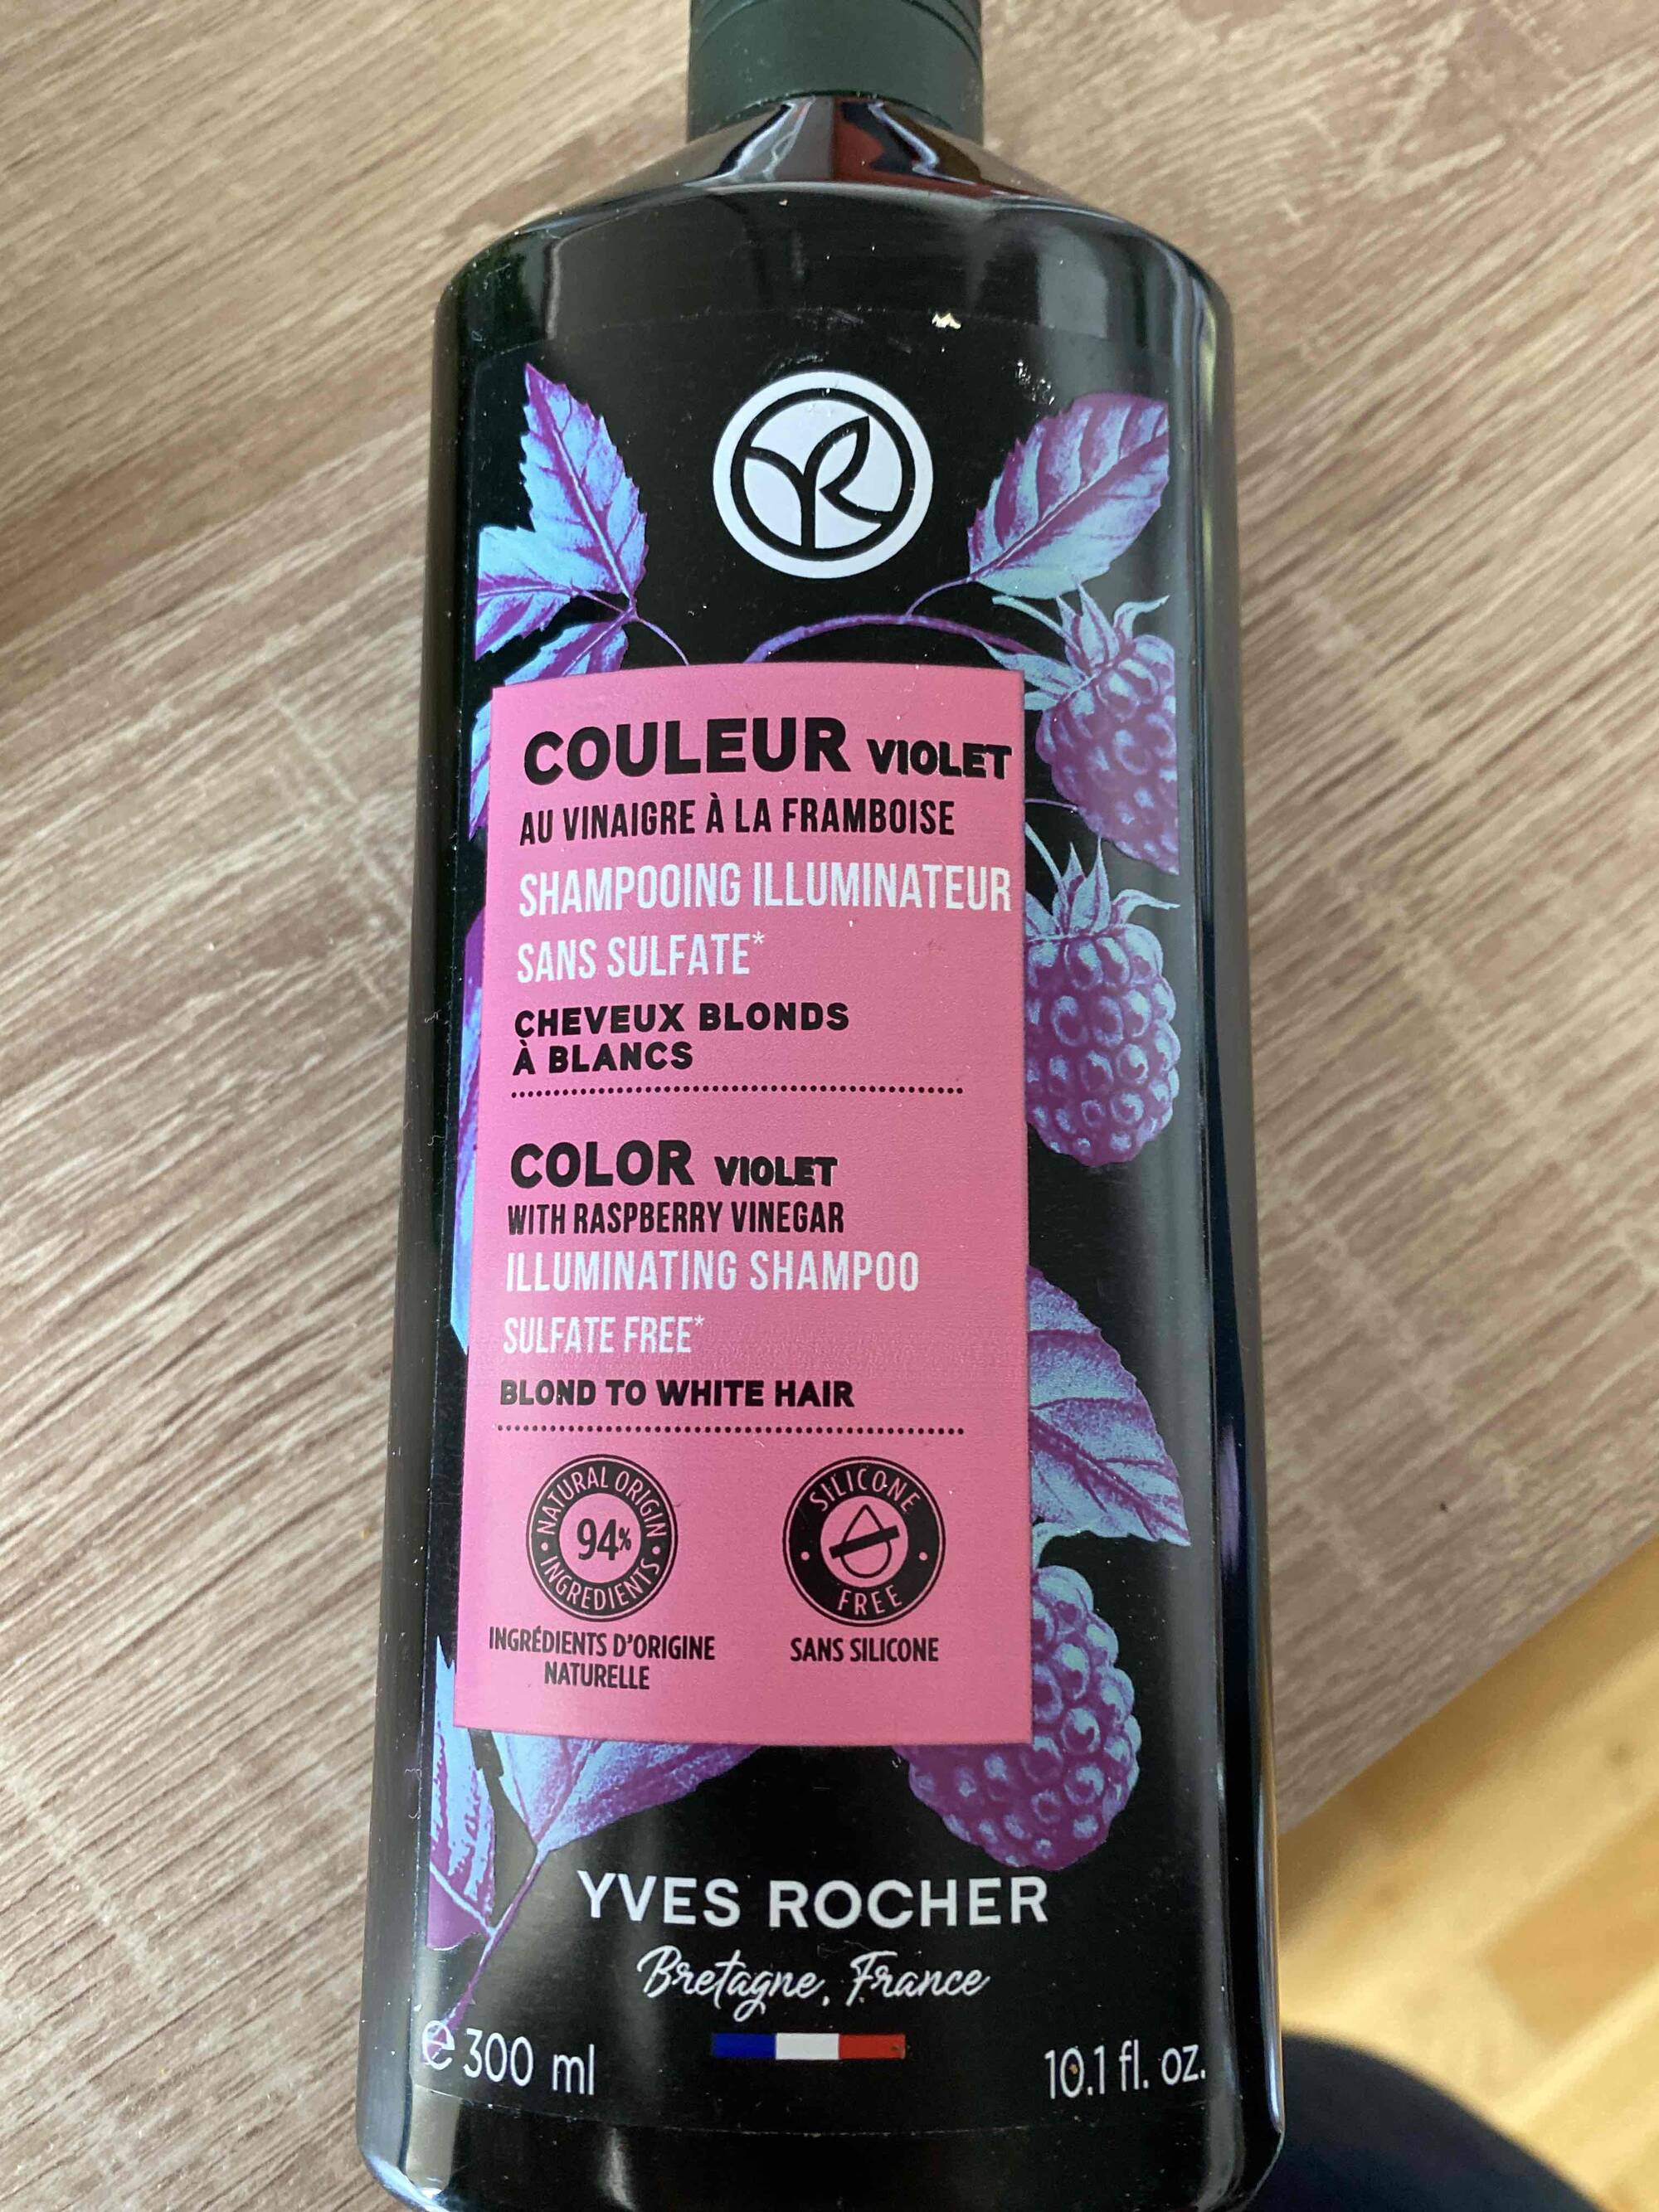 YVES ROCHER - Couleur violet - Shampooing illuminateur sans sulfate